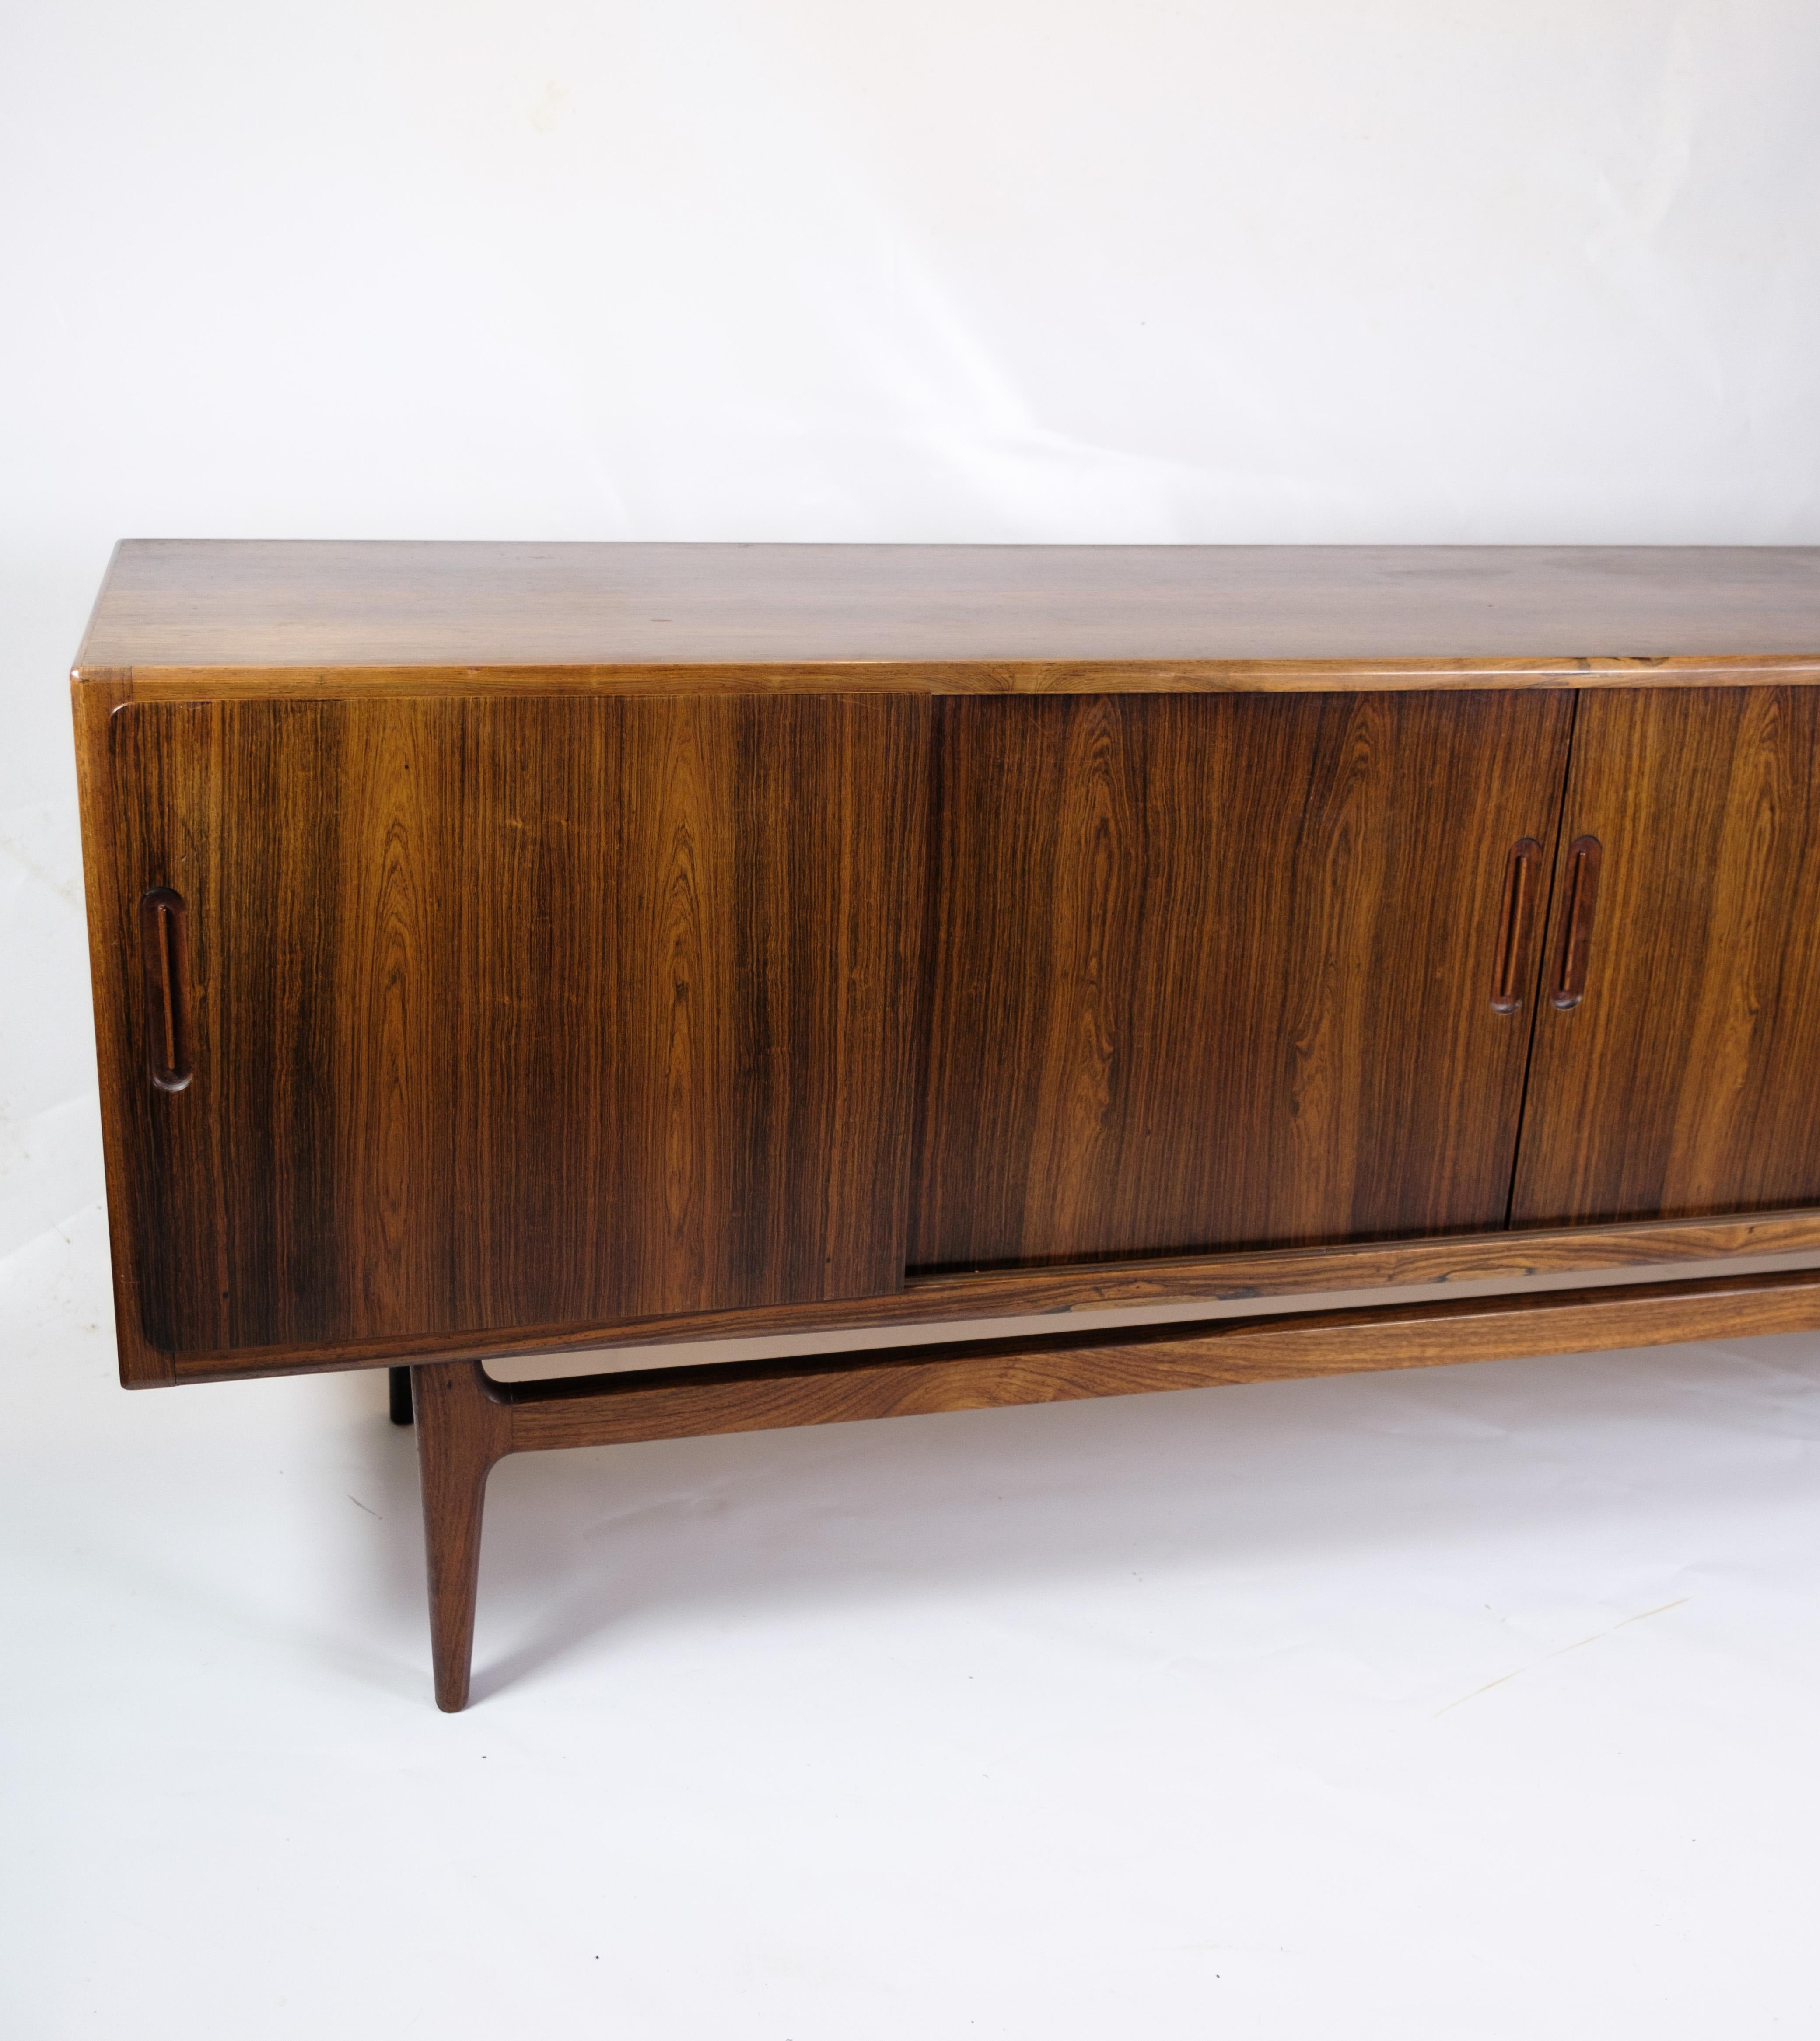 Le buffet est un exemple impressionnant de l'art mobilier danois des années 1960, où le bois de rose était utilisé pour créer des meubles beaux et fonctionnels. Le bois de rose et les pieds en palissandre massif confèrent au buffet un aspect élégant